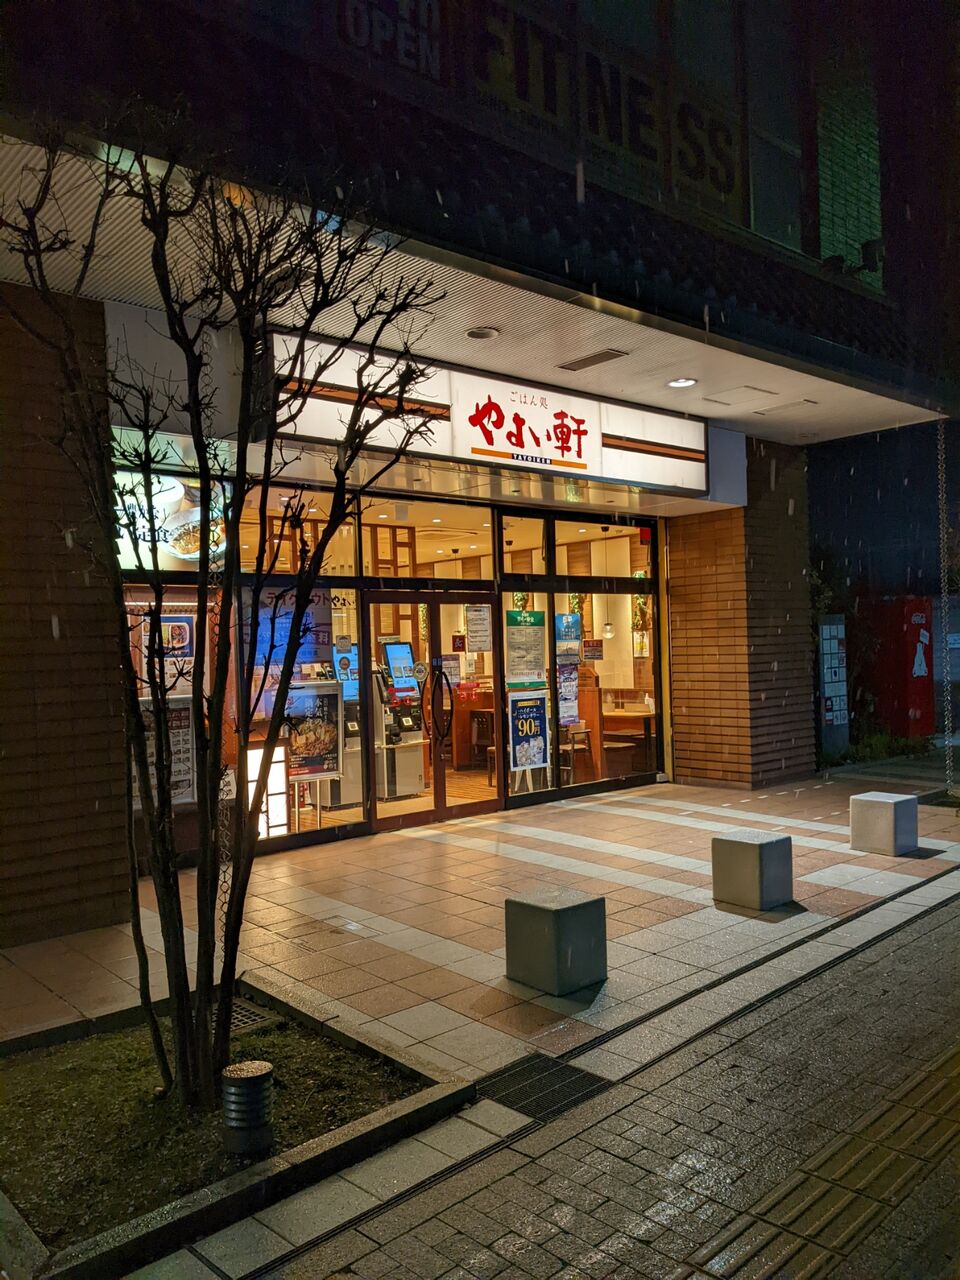 やよい軒京都二条店がクレジットカード対応券売機になっていた件 京都目線 Fwf彡